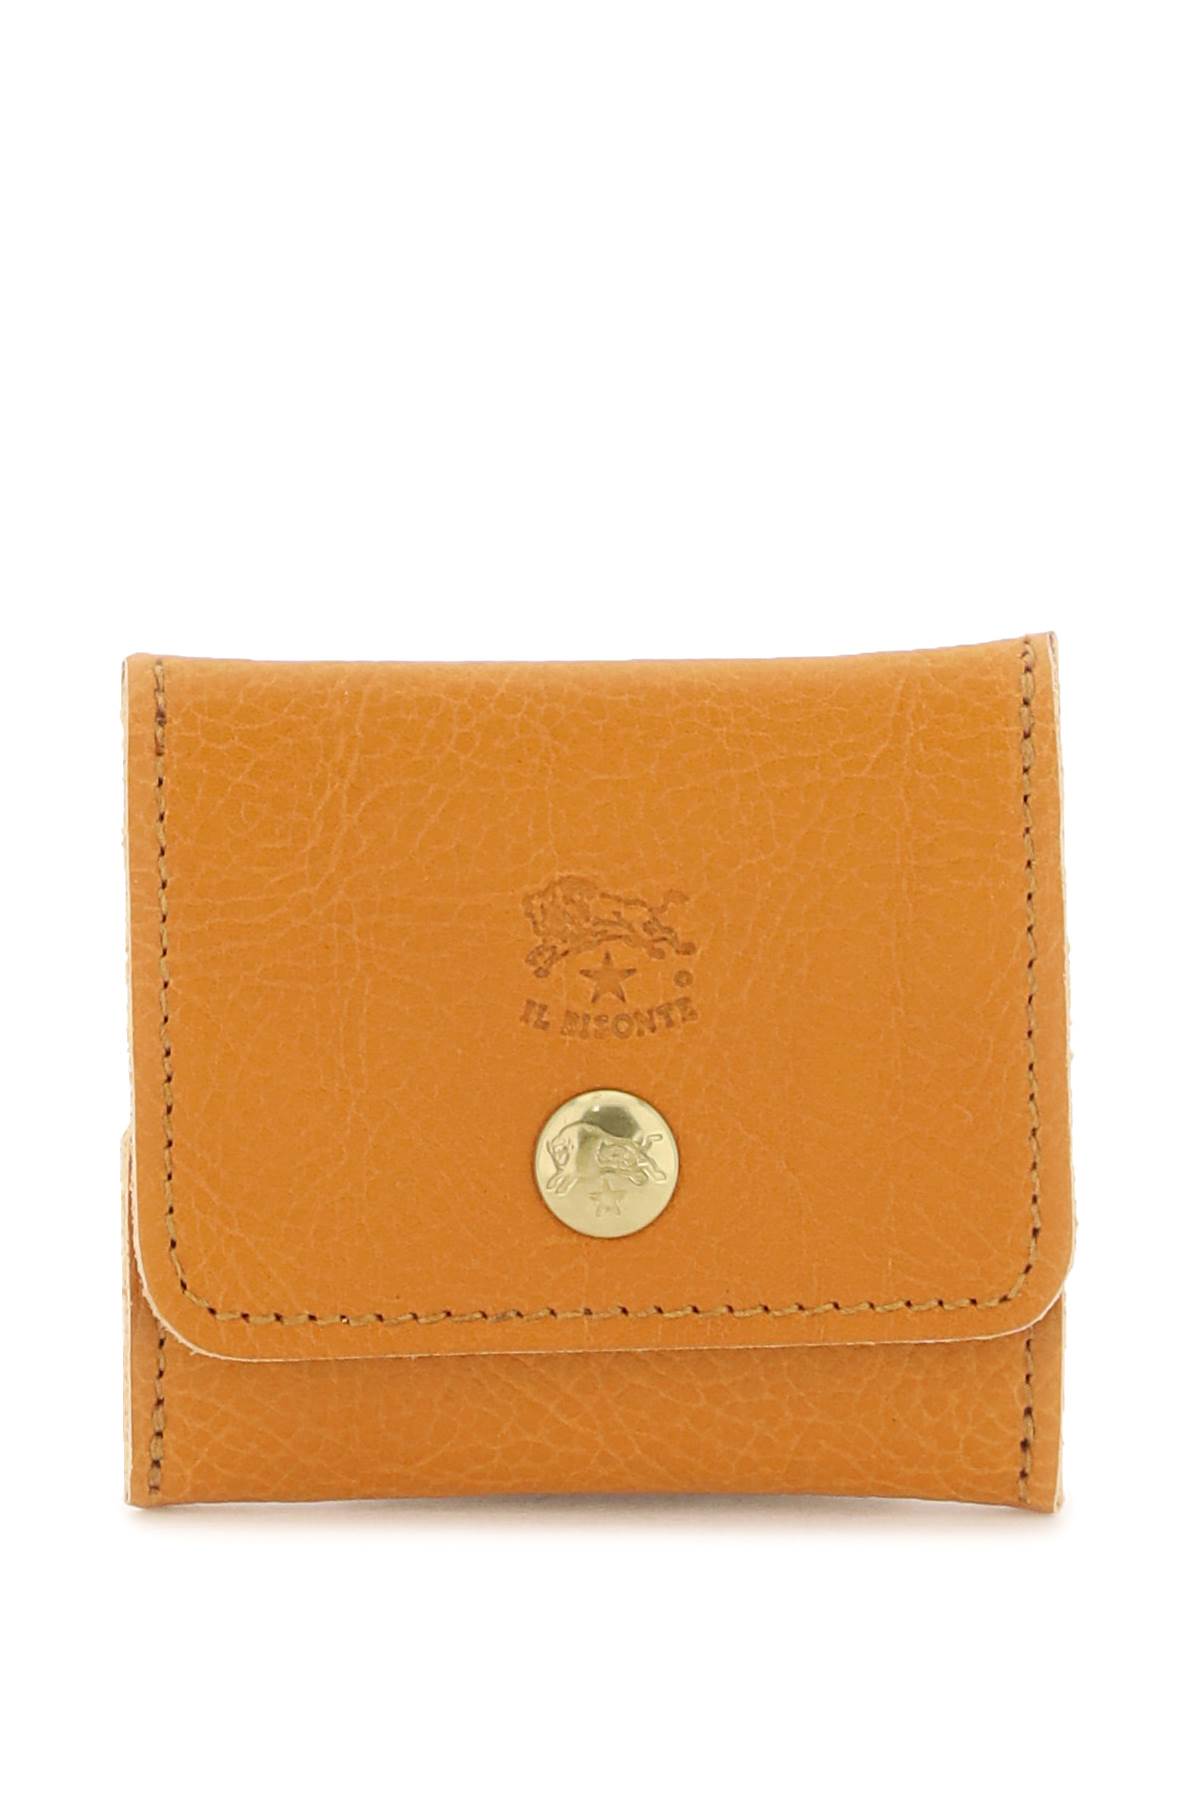 Il Bisonte Soft Calf Leather Coin Purse In Miele (orange) | ModeSens